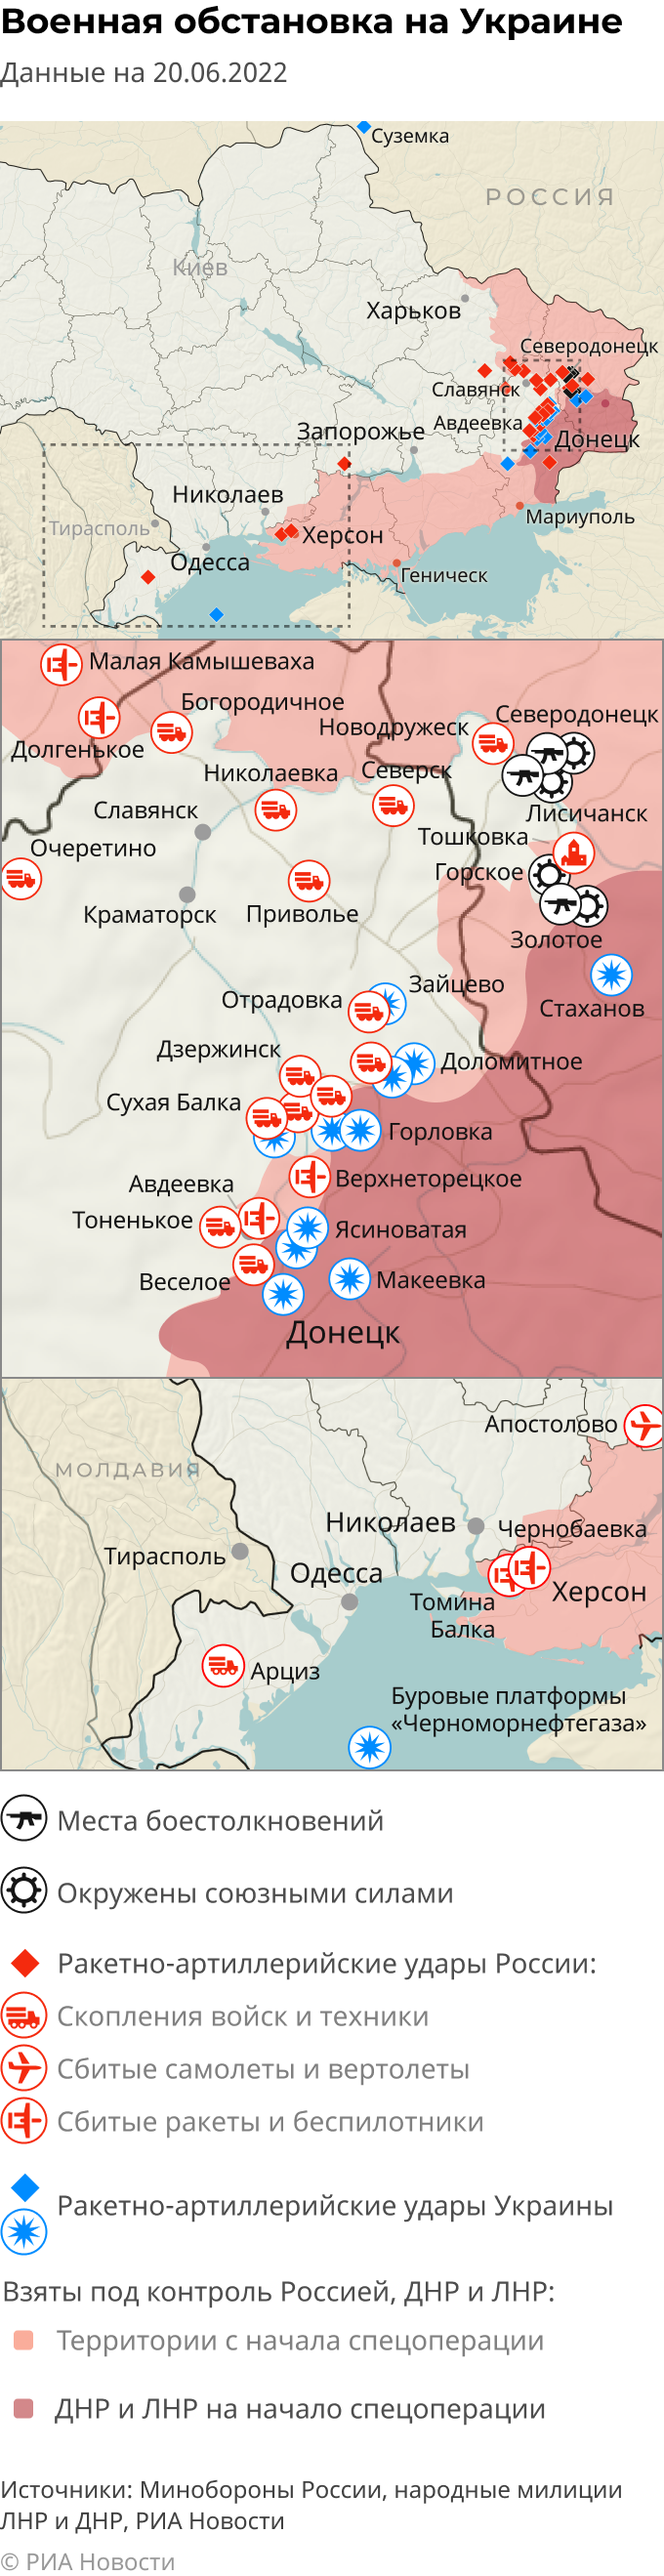 Последние новости спецоперации на украине на сегодня карта